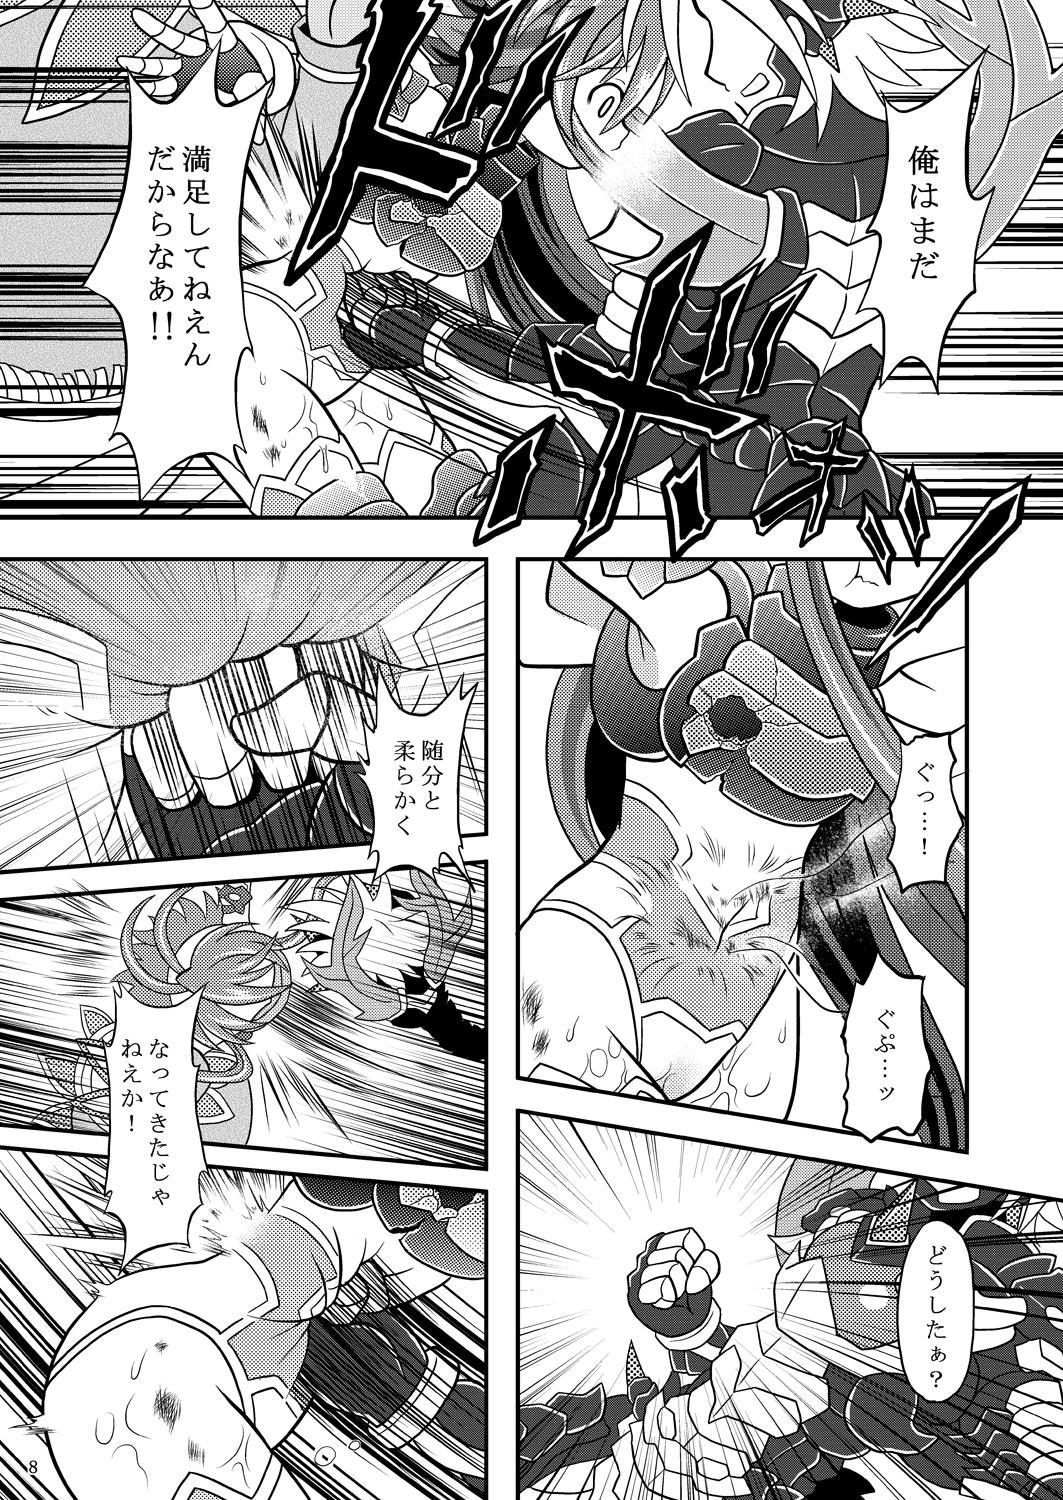 Love Suireiken vs Zettai Bouryoku - Shinrabansho Teamskeet - Page 7